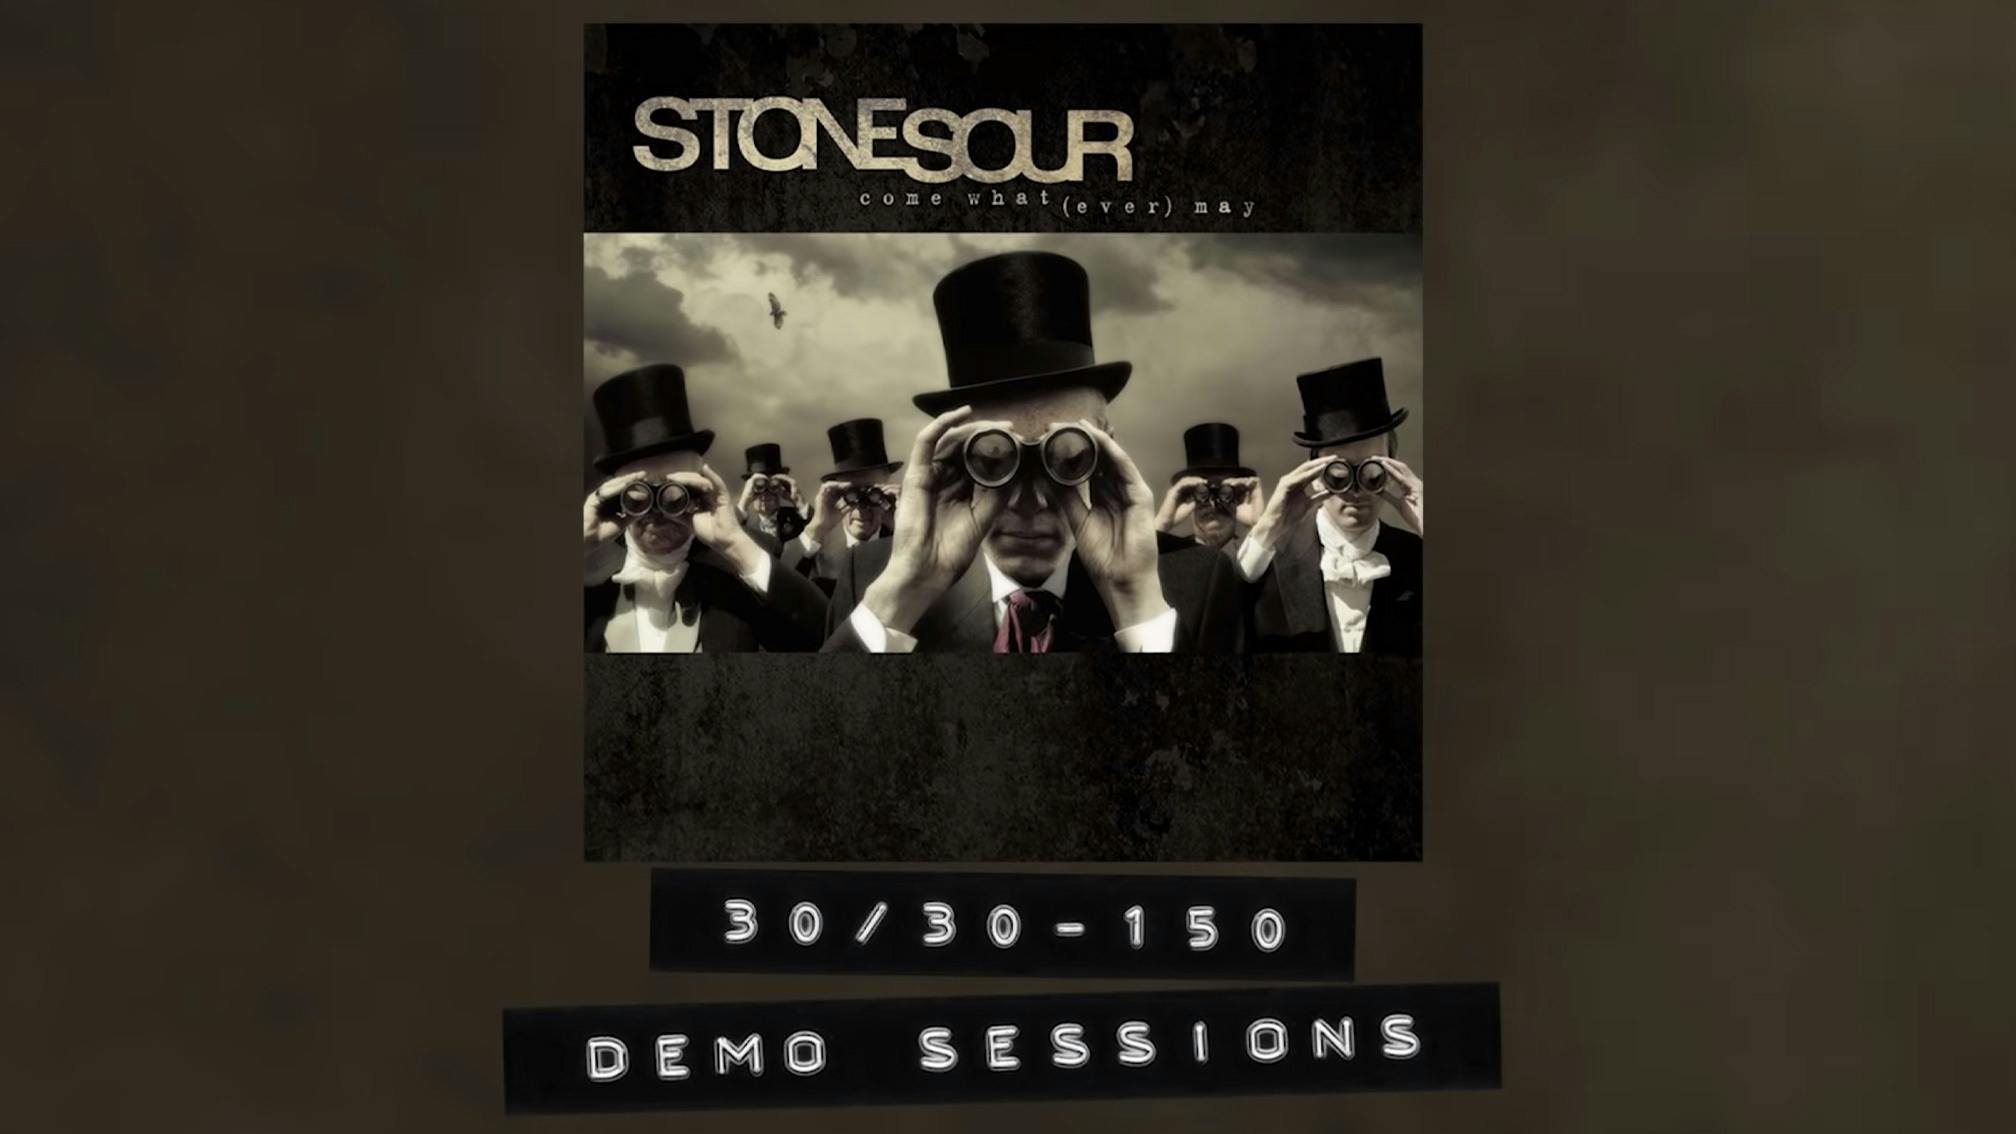 Listen To Stone Sour's Original Demo Of 30/30-150